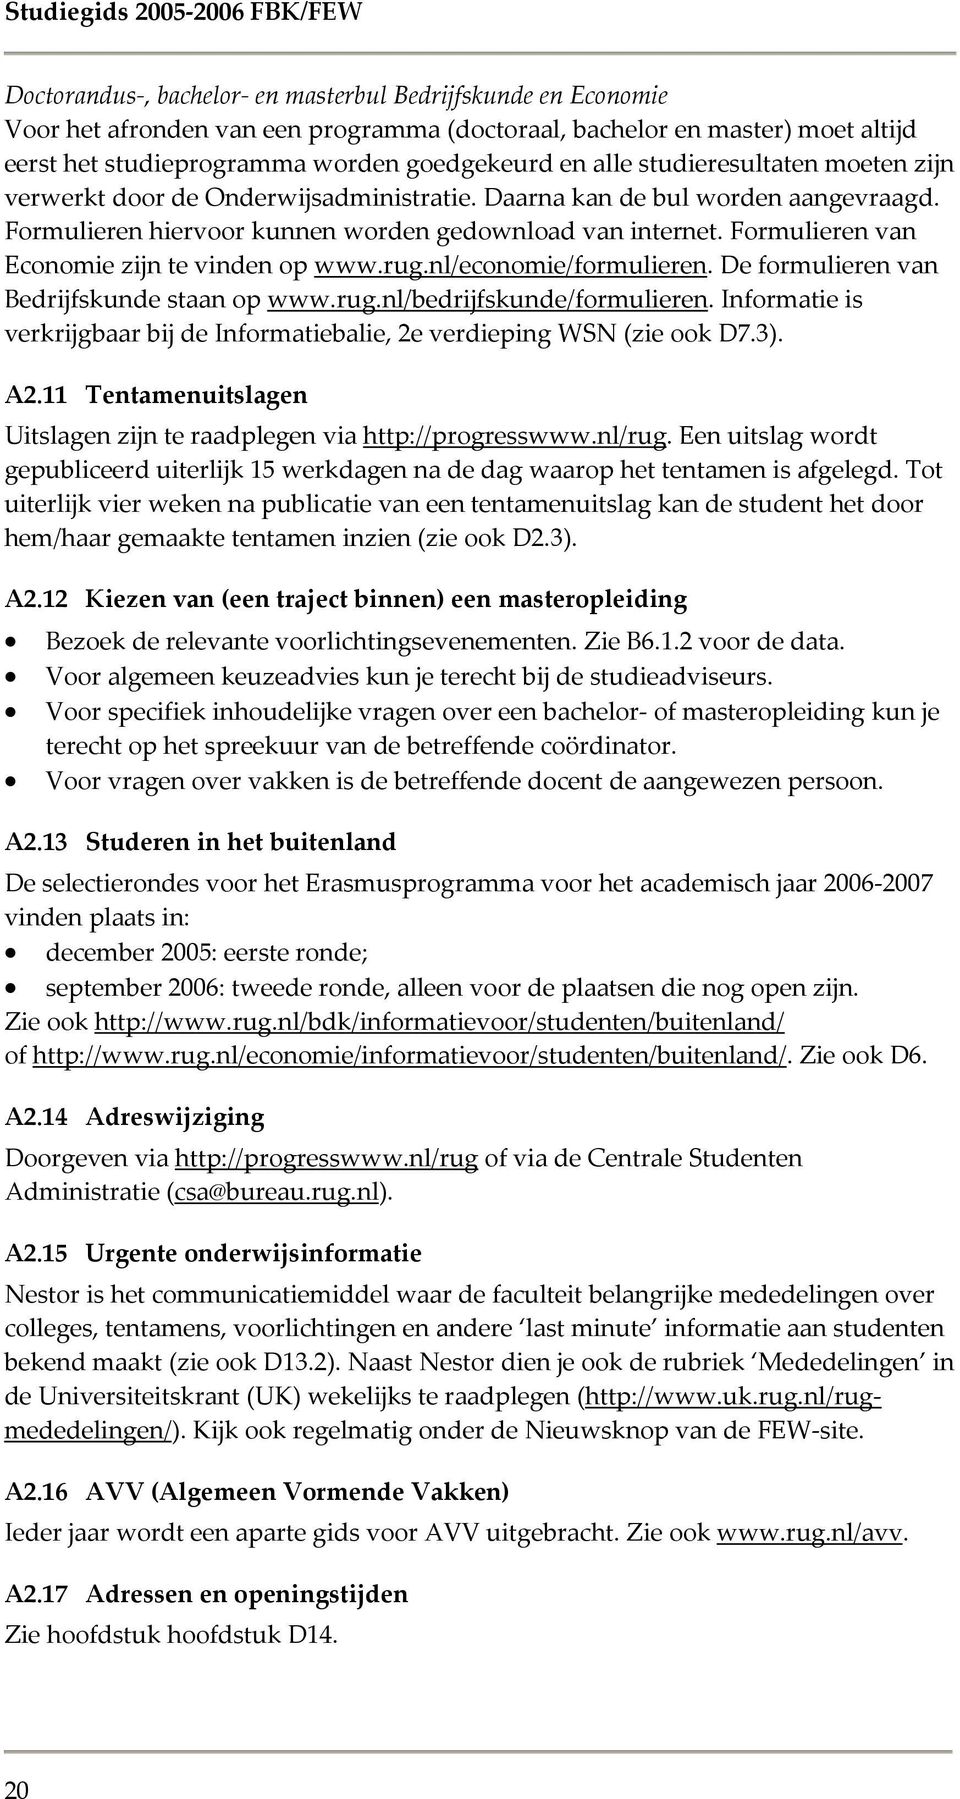 Formulieren van Economie zijn te vinden op www.rug.nl/economie/formulieren. De formulieren van Bedrijfskunde staan op www.rug.nl/bedrijfskunde/formulieren.